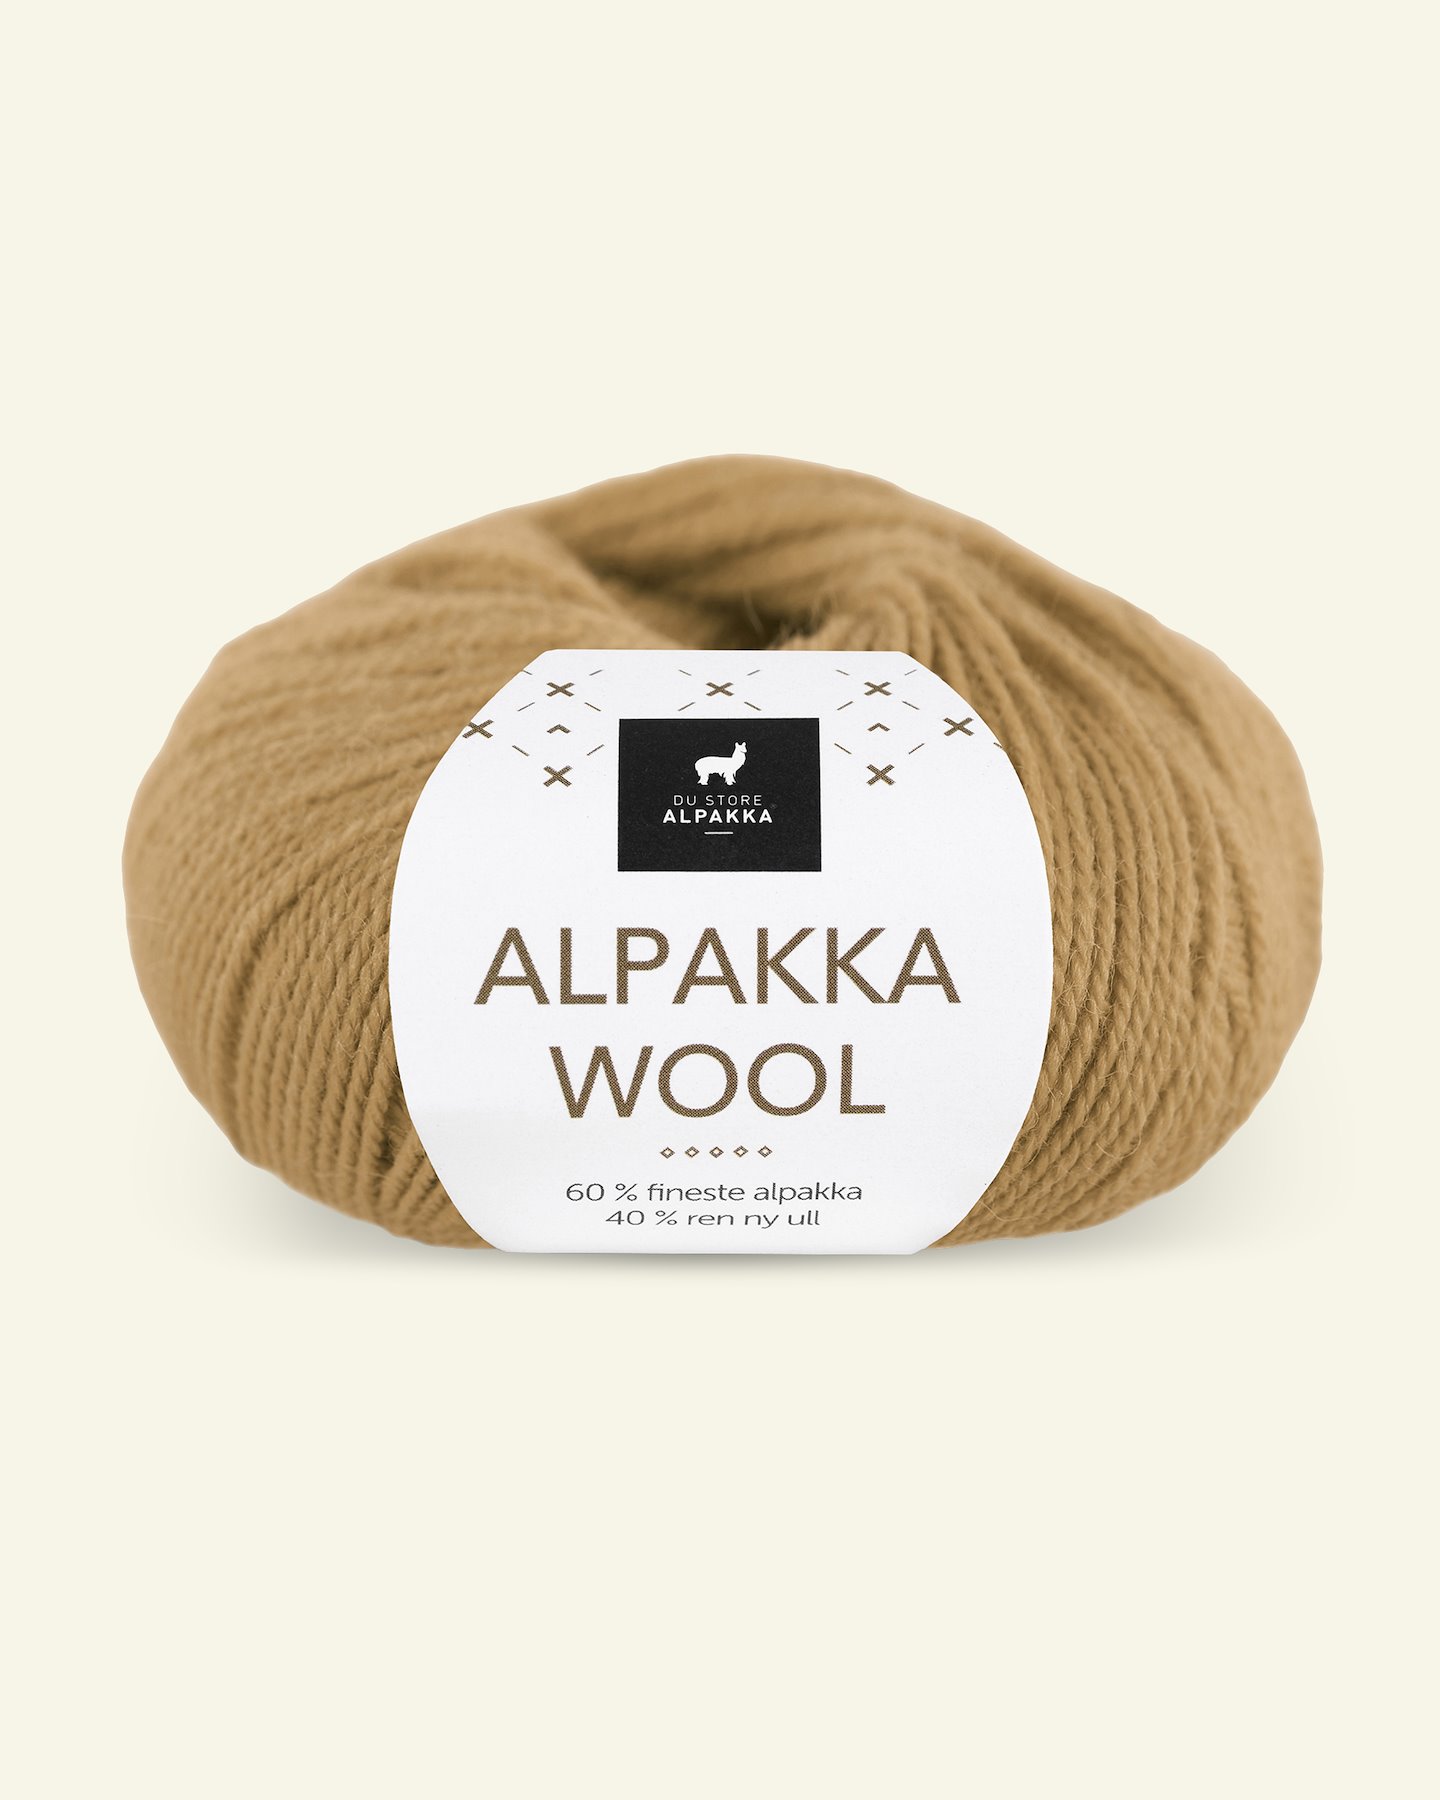 Du Store Alpakka, Alpaka Wolle "Alpakka Wool", honig (553) 90000570_pack